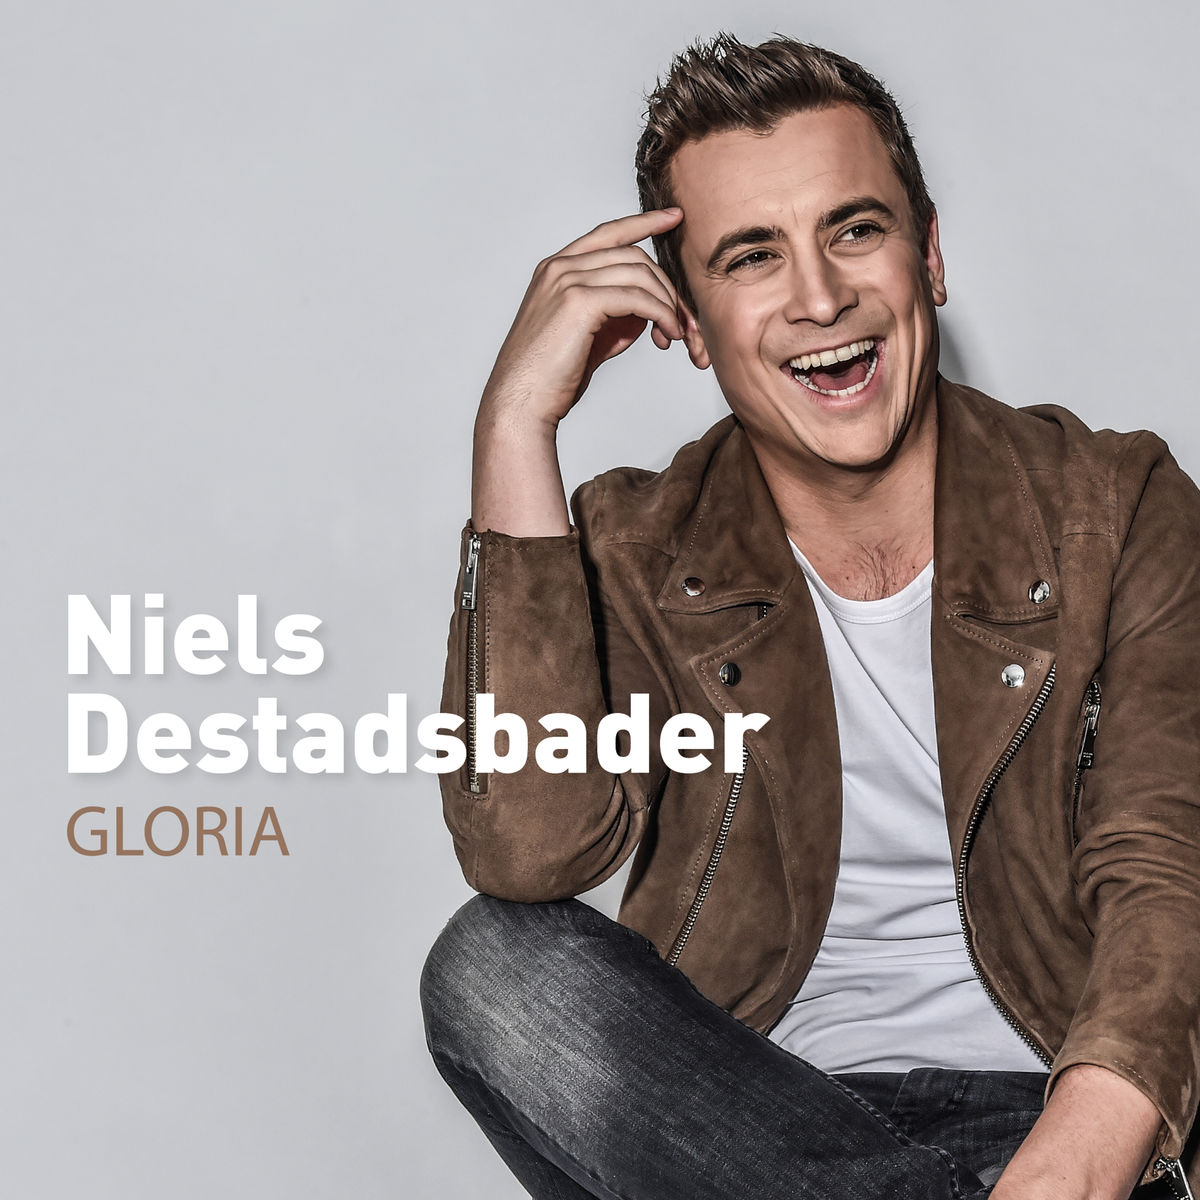 Niels Destadsbader Gloria - austriancharts.at